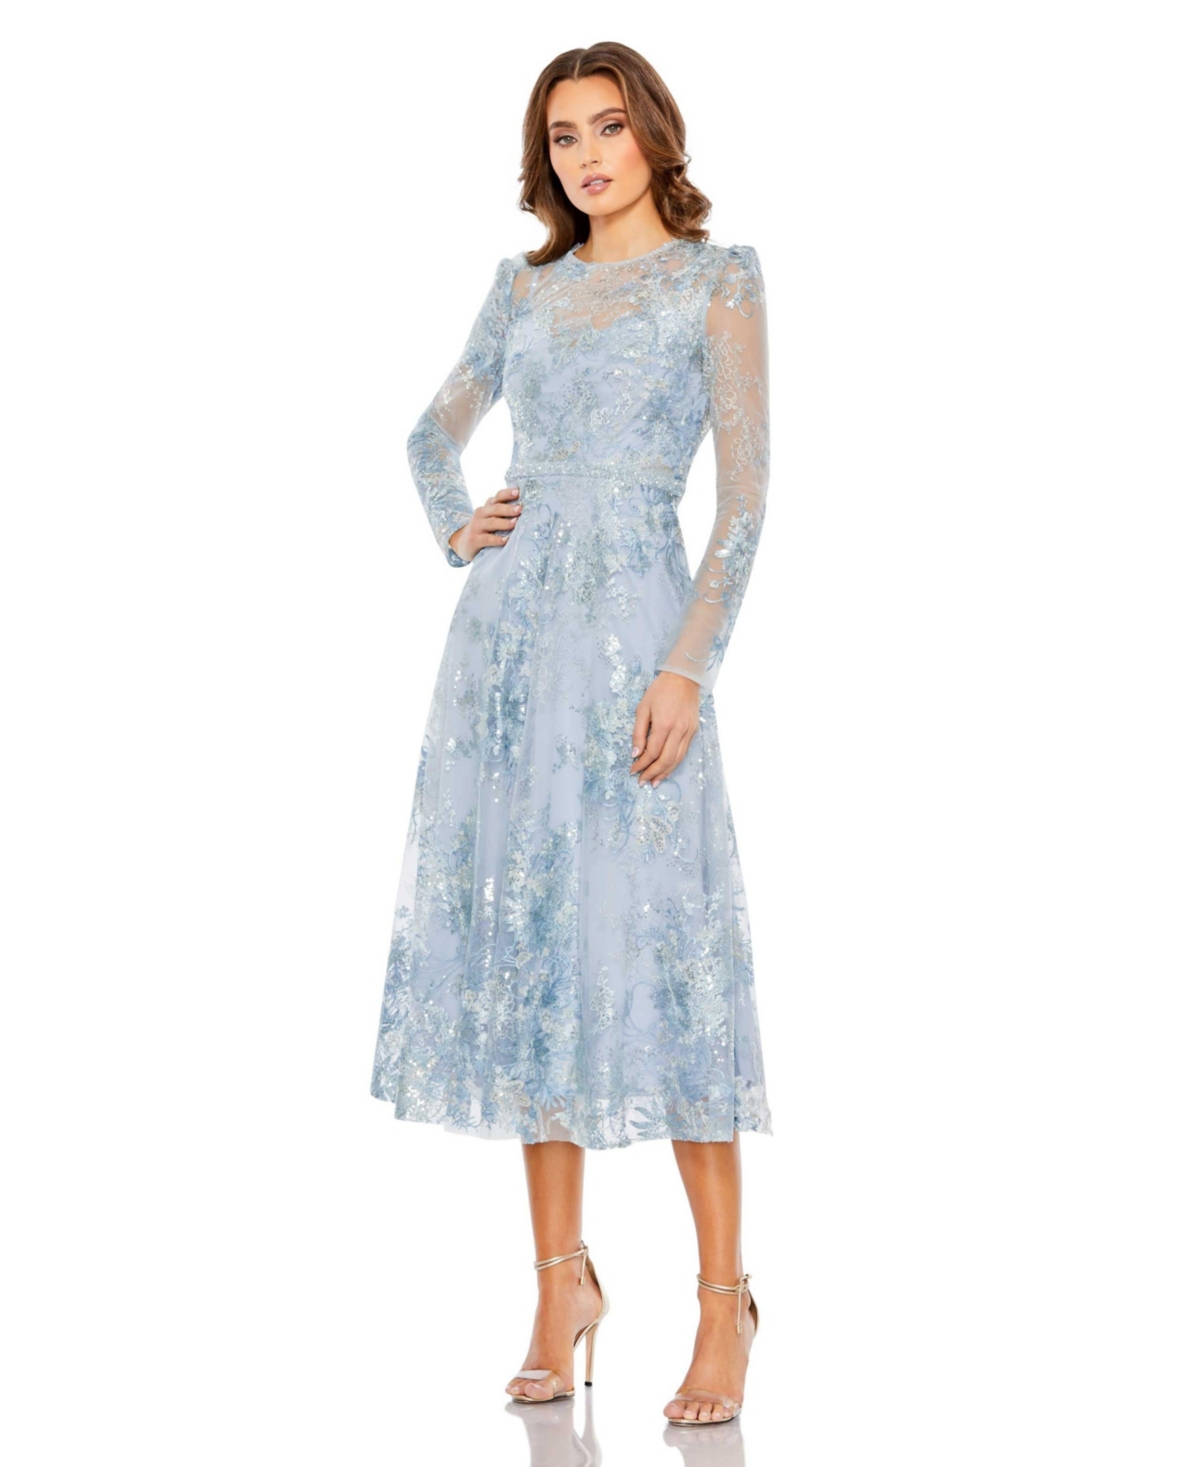 Vintage Evening Dresses, Vintage Formal Dresses Womens Embellished Illusion Long Sleeve Midi Dress - Powder blue $598.00 AT vintagedancer.com